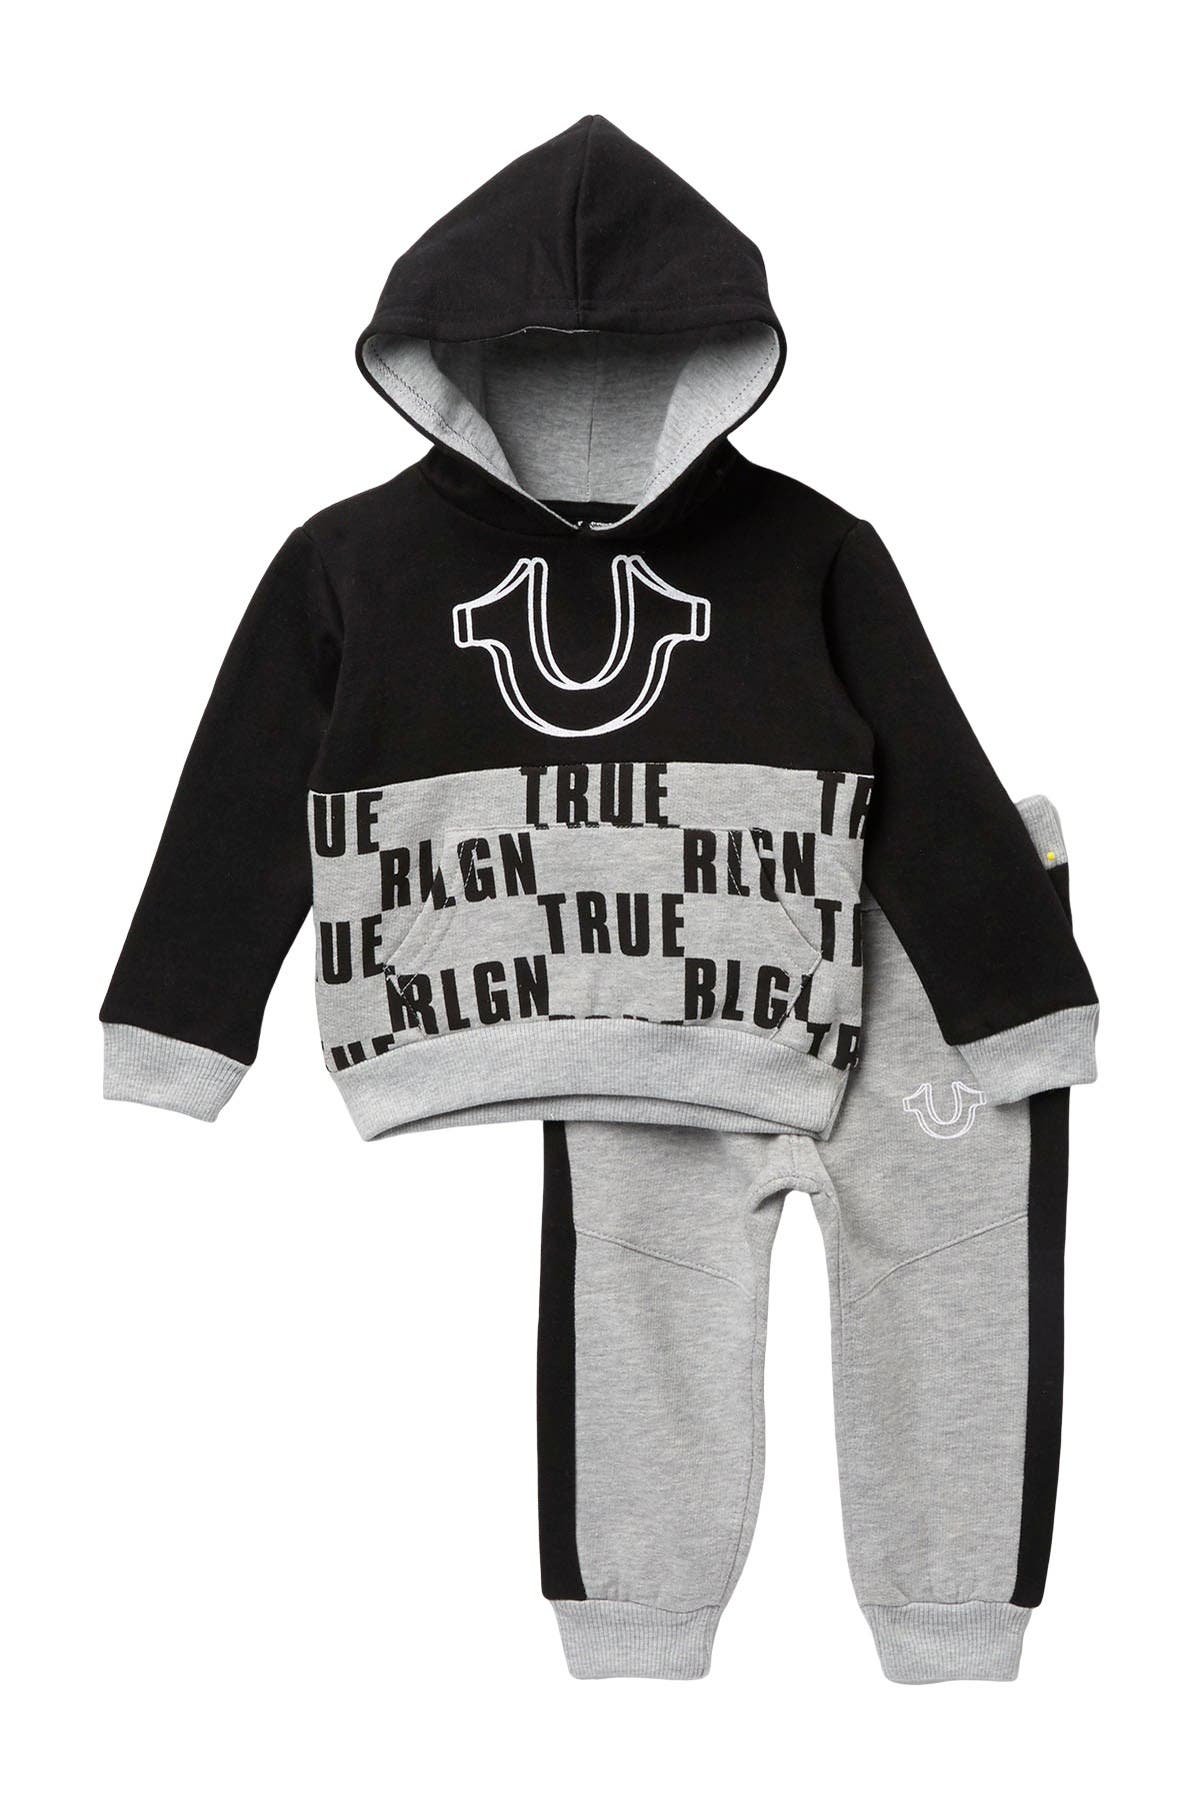 true religion baby boy clothes